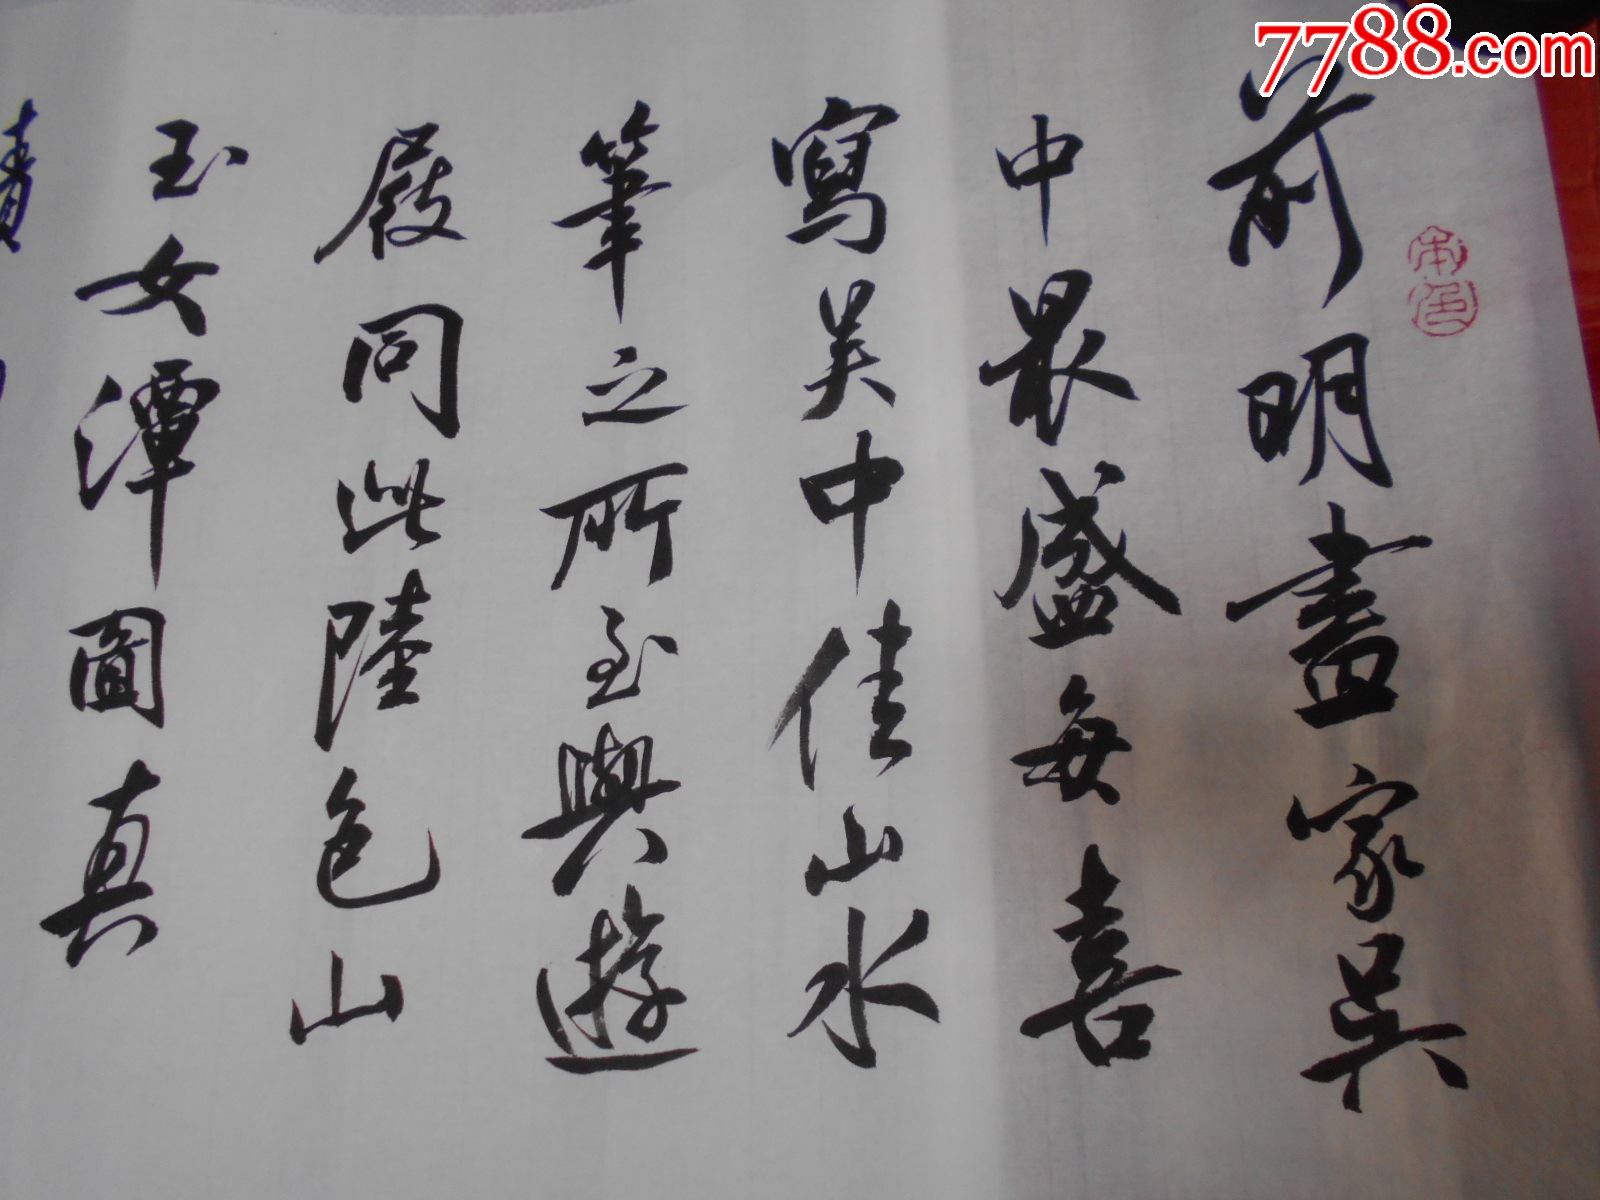 南京书法家王恒书法横幅漂亮尺寸137348厘米